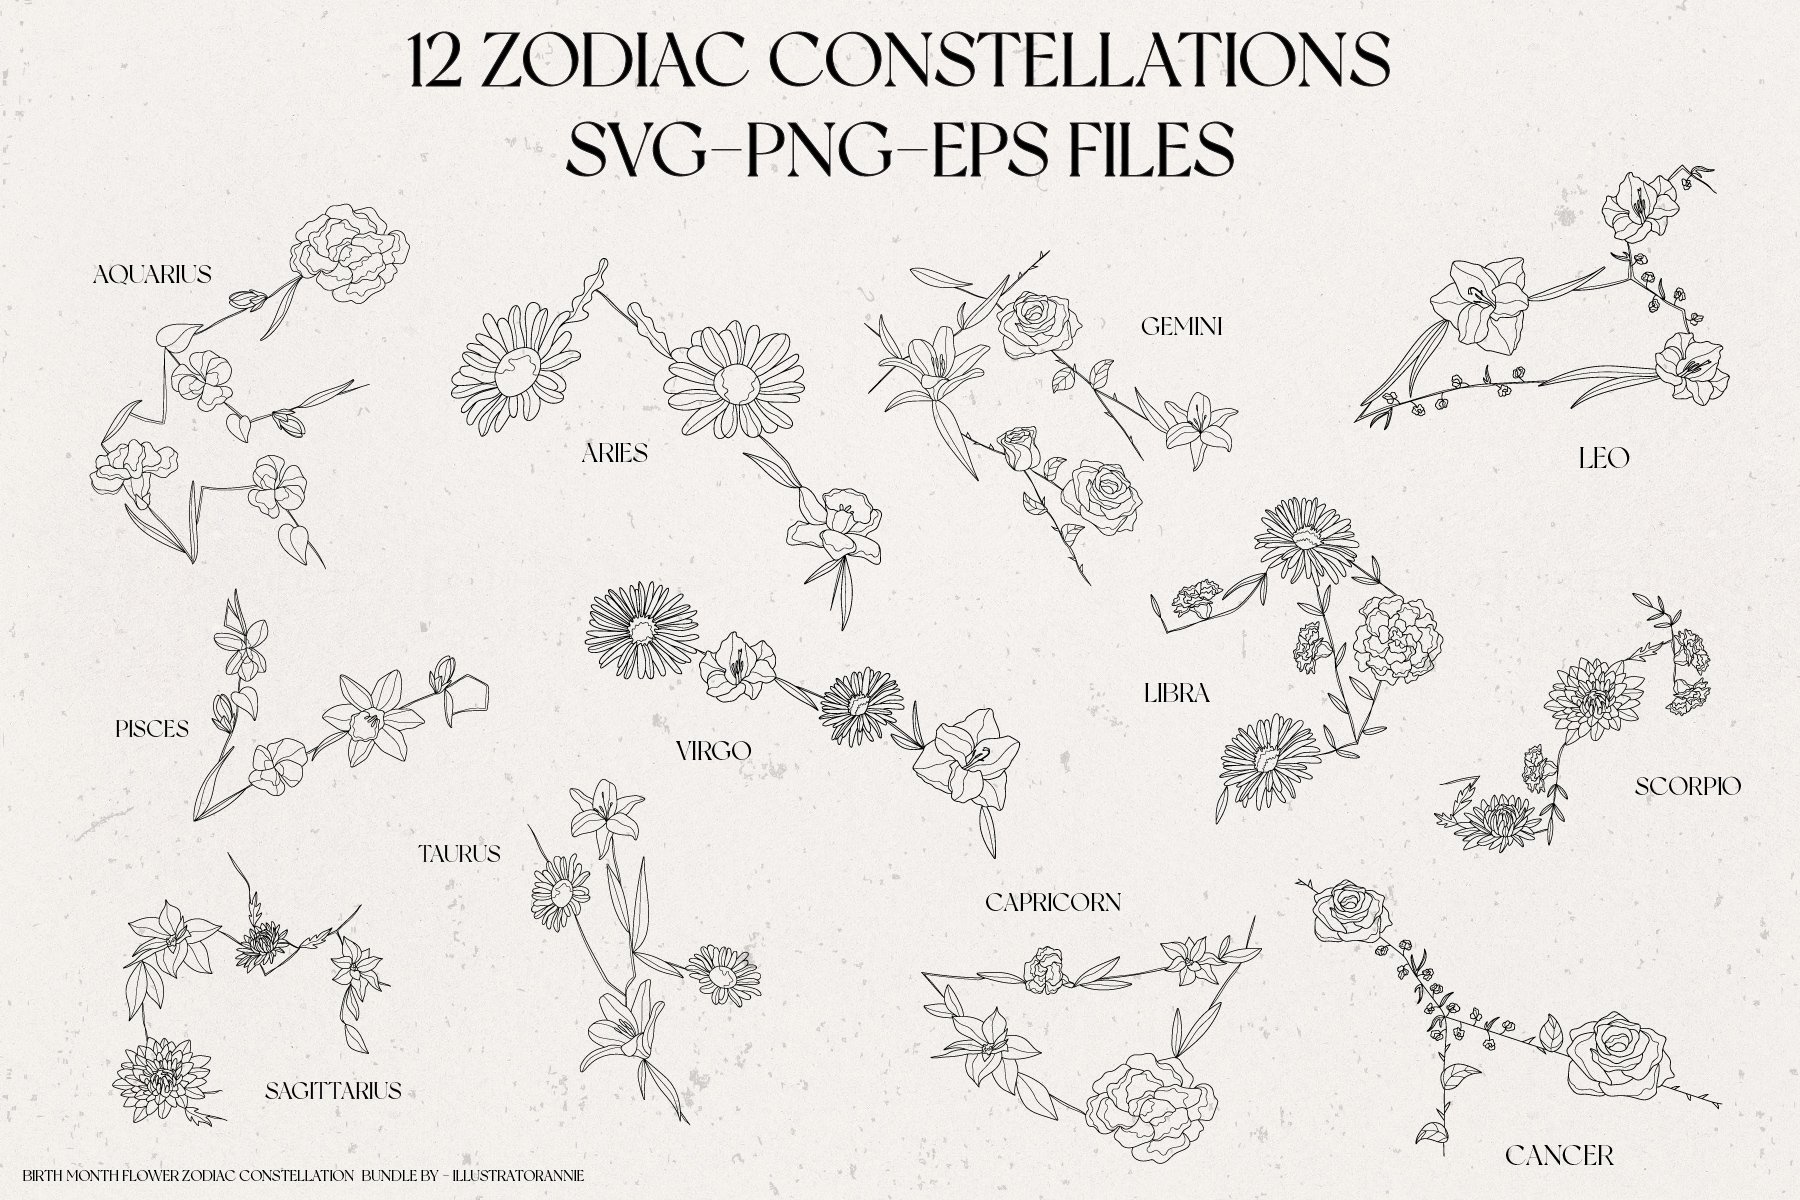 Flowers in zodiac signs shape.